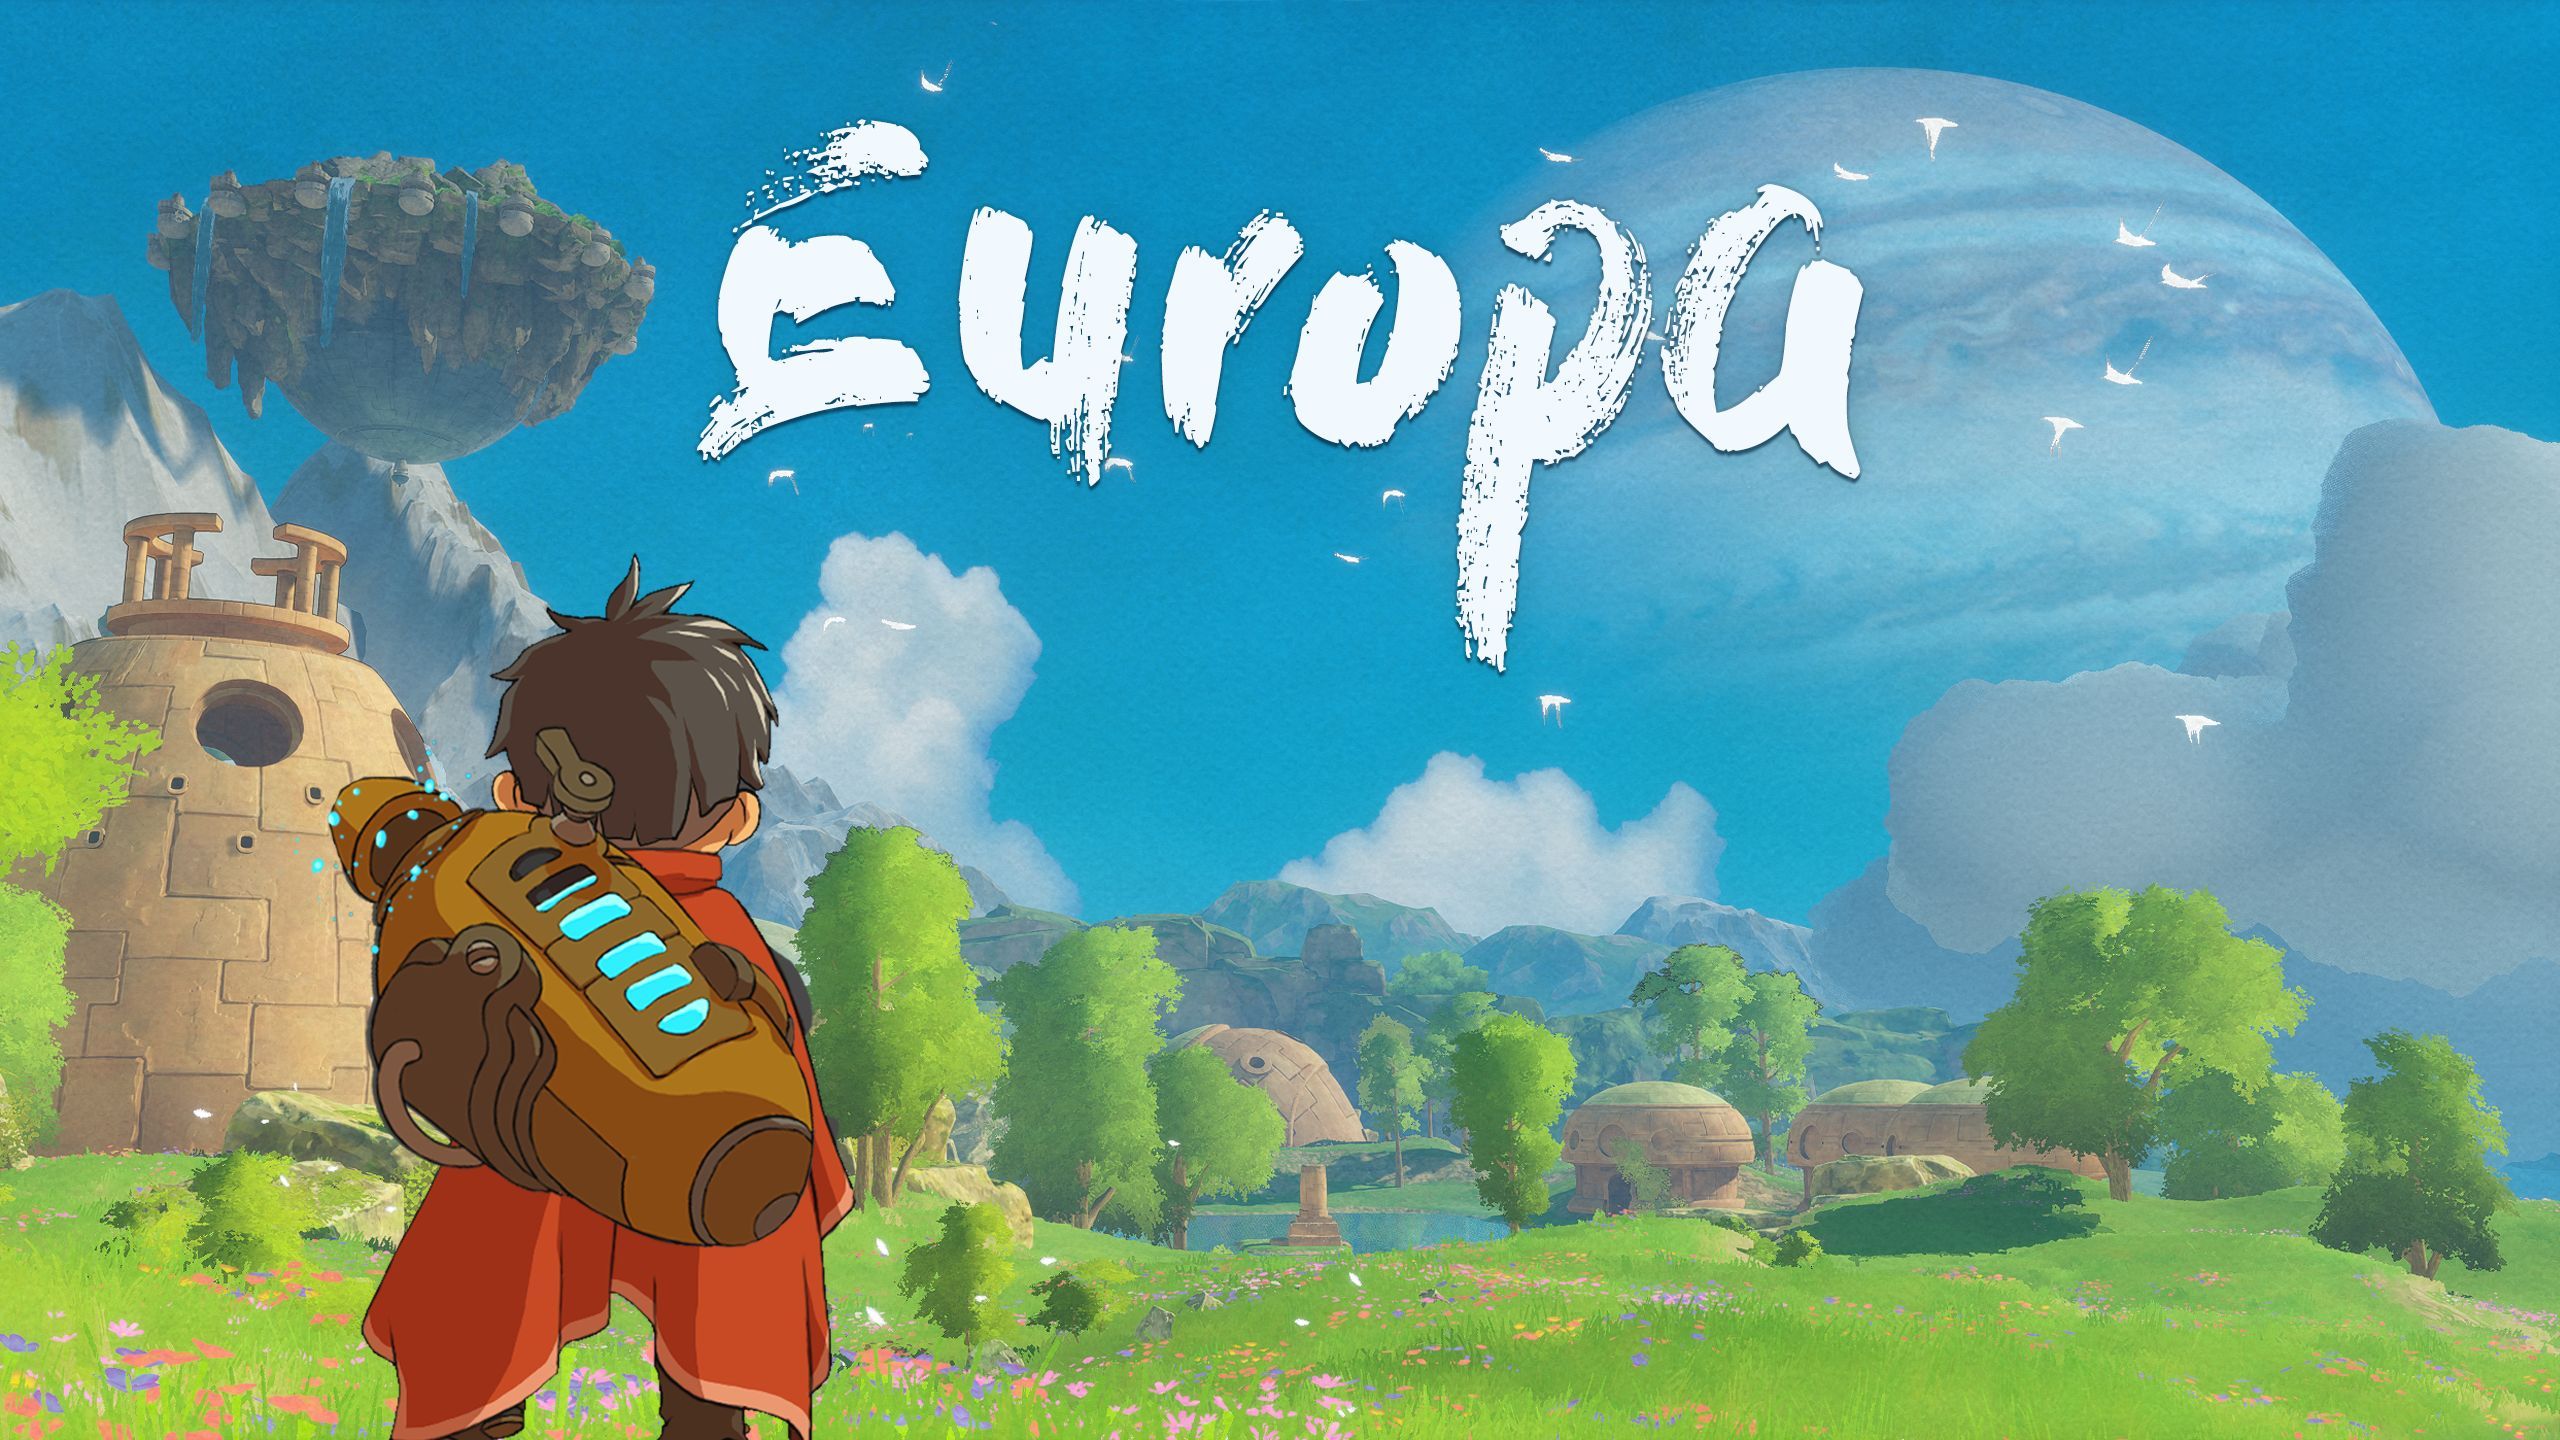 #Europa ist ein Ghibli-inspiriertes, friedliches Spiel voller Abenteuer und Entdeckung